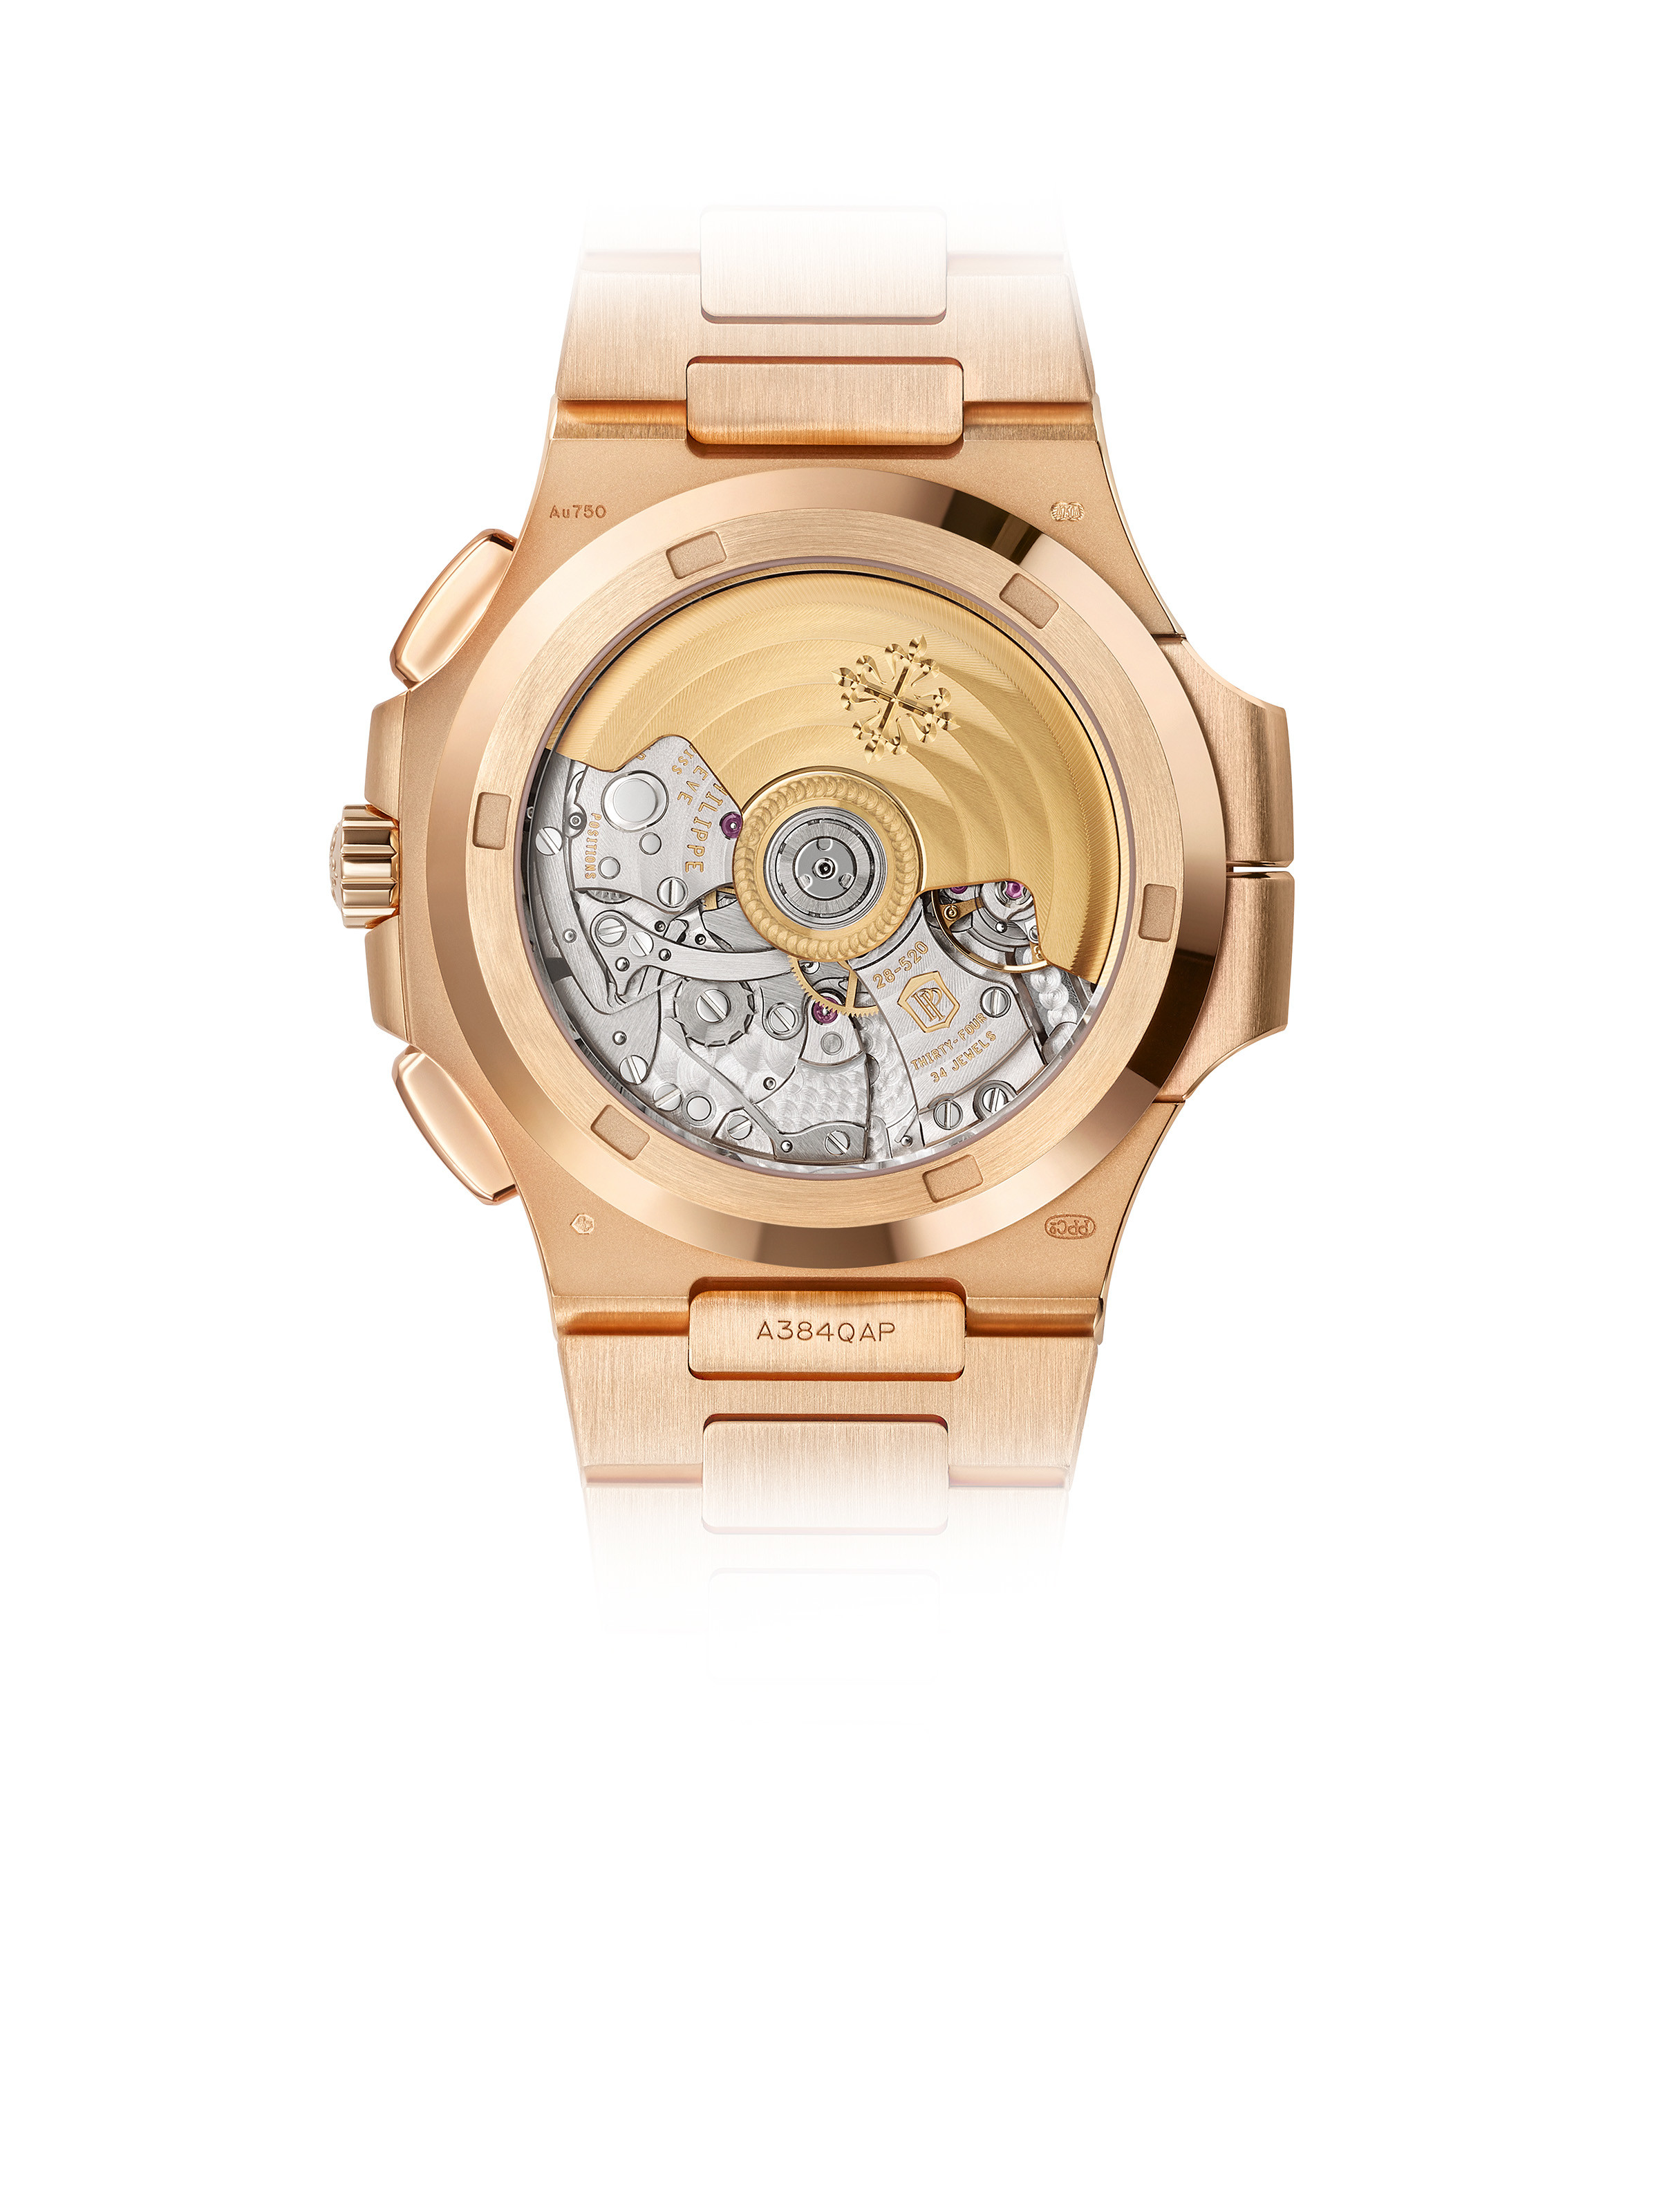 Patek Philippe Nautilus Chronograph Automatic Blue Dial Men's Watch  5990-1R-001